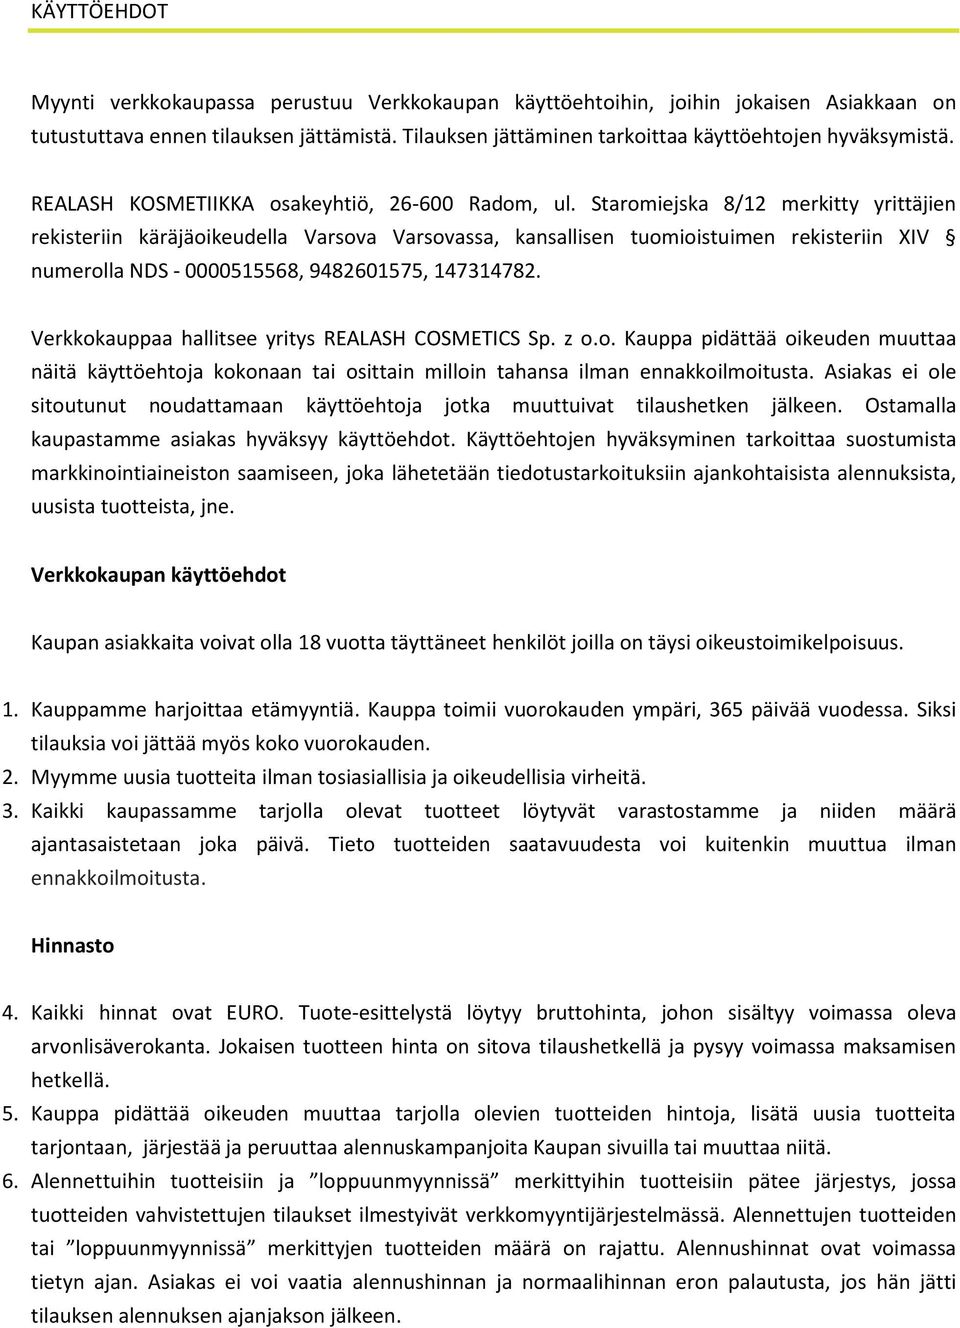 Staromiejska 8/12 merkitty yrittäjien rekisteriin käräjäoikeudella Varsova Varsovassa, kansallisen tuomioistuimen rekisteriin XIV numerolla NDS - 0000515568, 9482601575, 147314782.